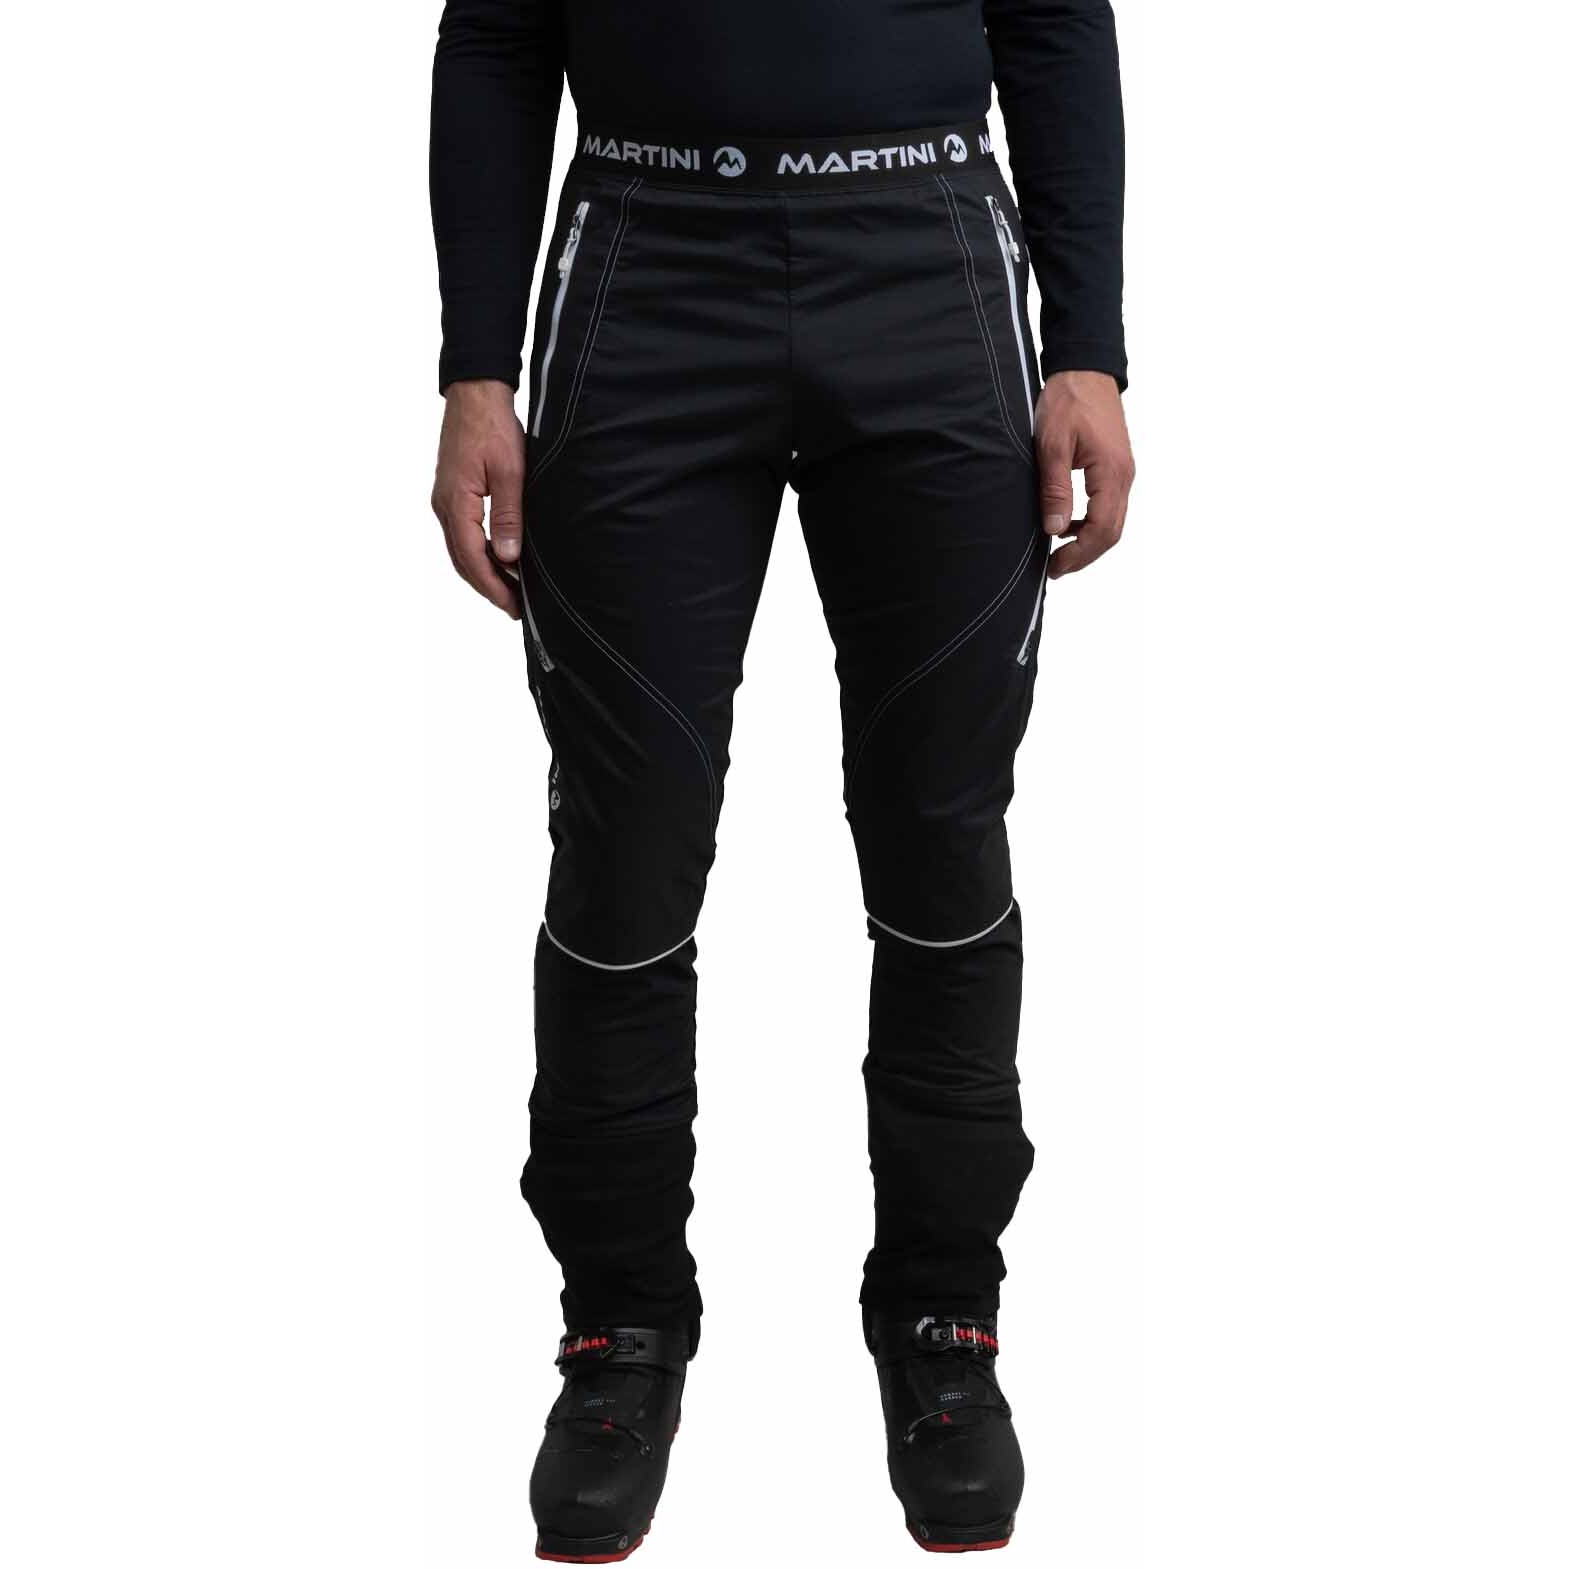 Productfoto van Martini Sportswear Giro Broek Heren - zwart_zwart